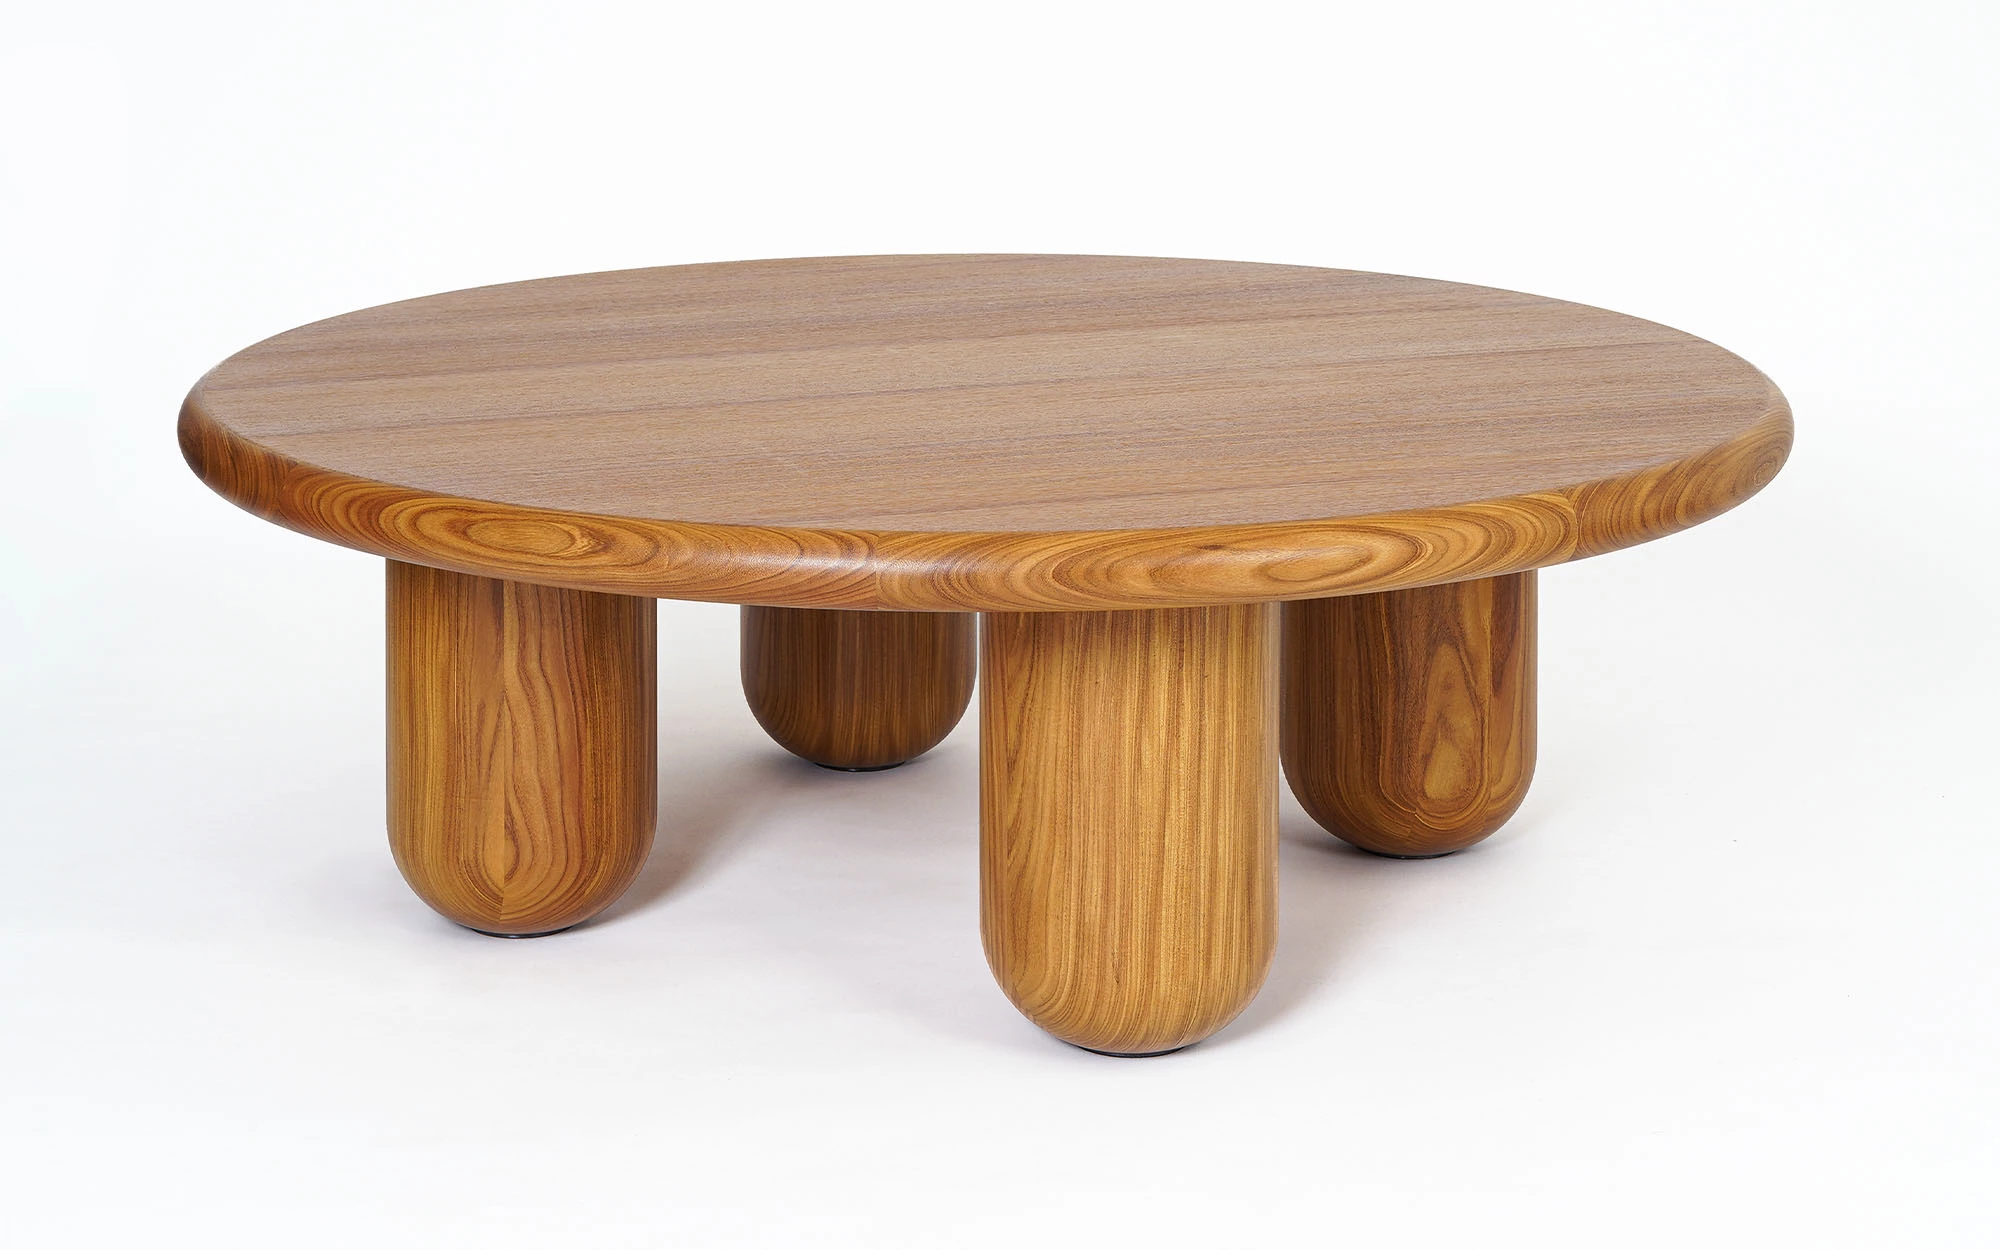 Organism coffee table - Jaime Hayon - Carpet - Galerie kreo